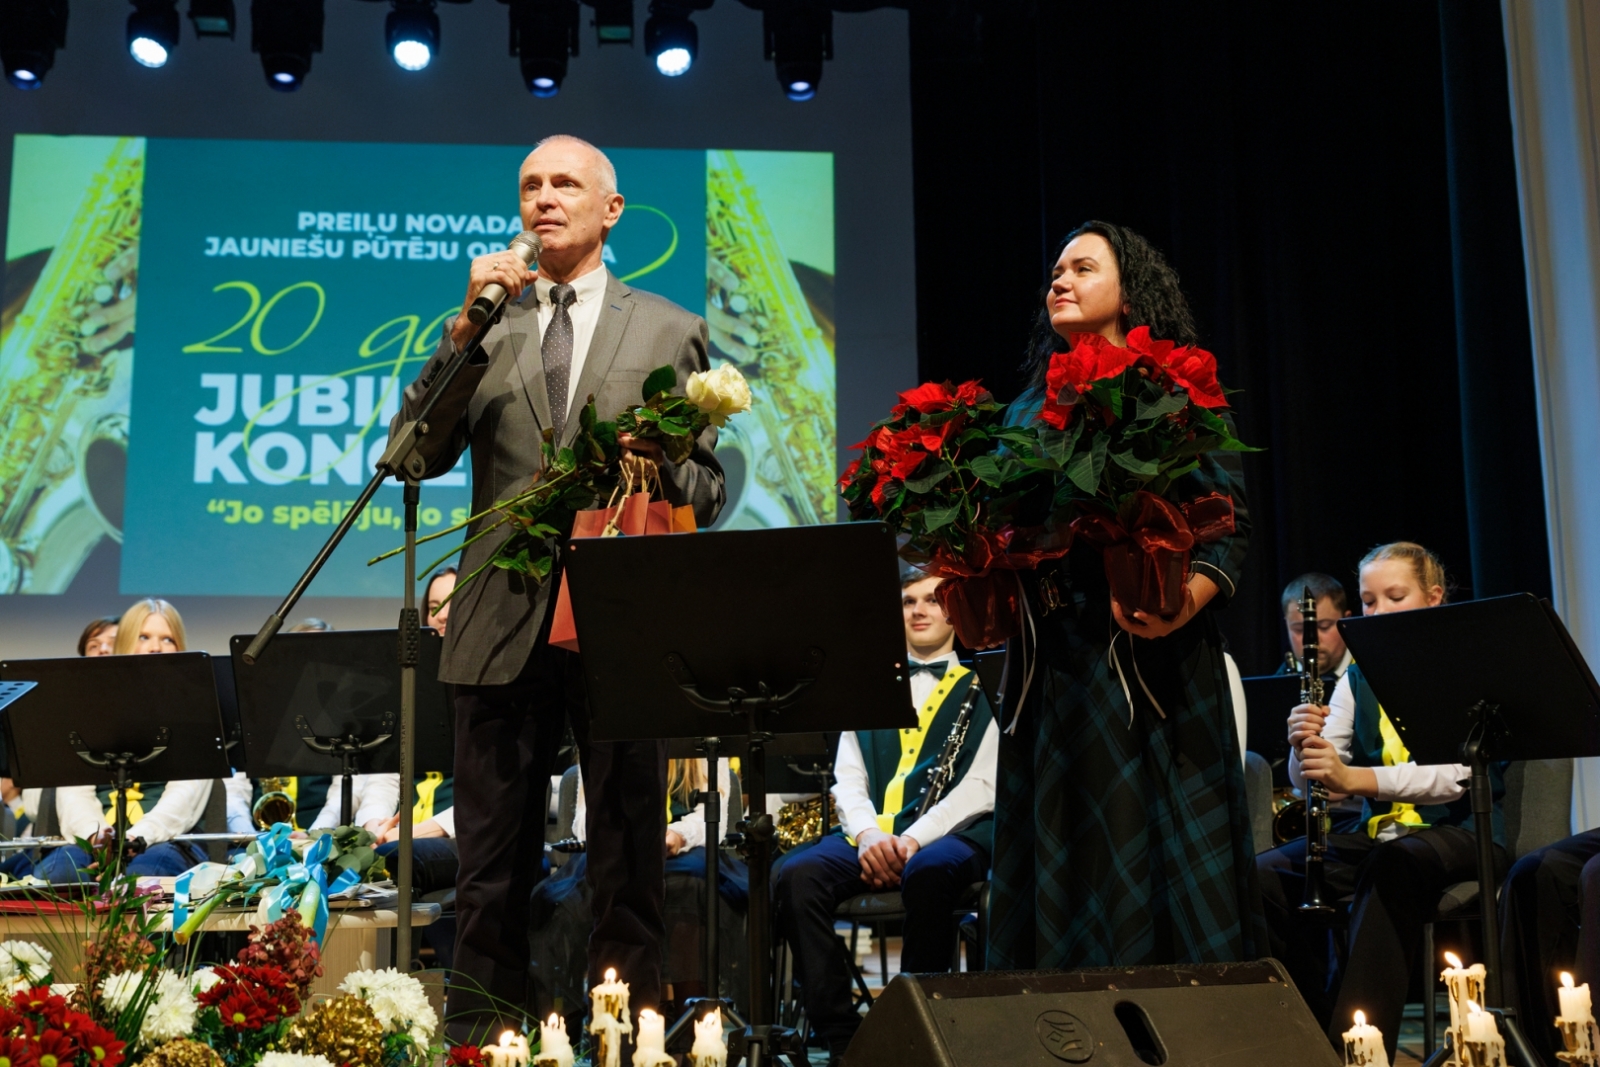 Preiļu novada Jauniešu pūtēju orķestra 20 gadu jubilejas koncerts "Jo spēlēju, jo skanēja"